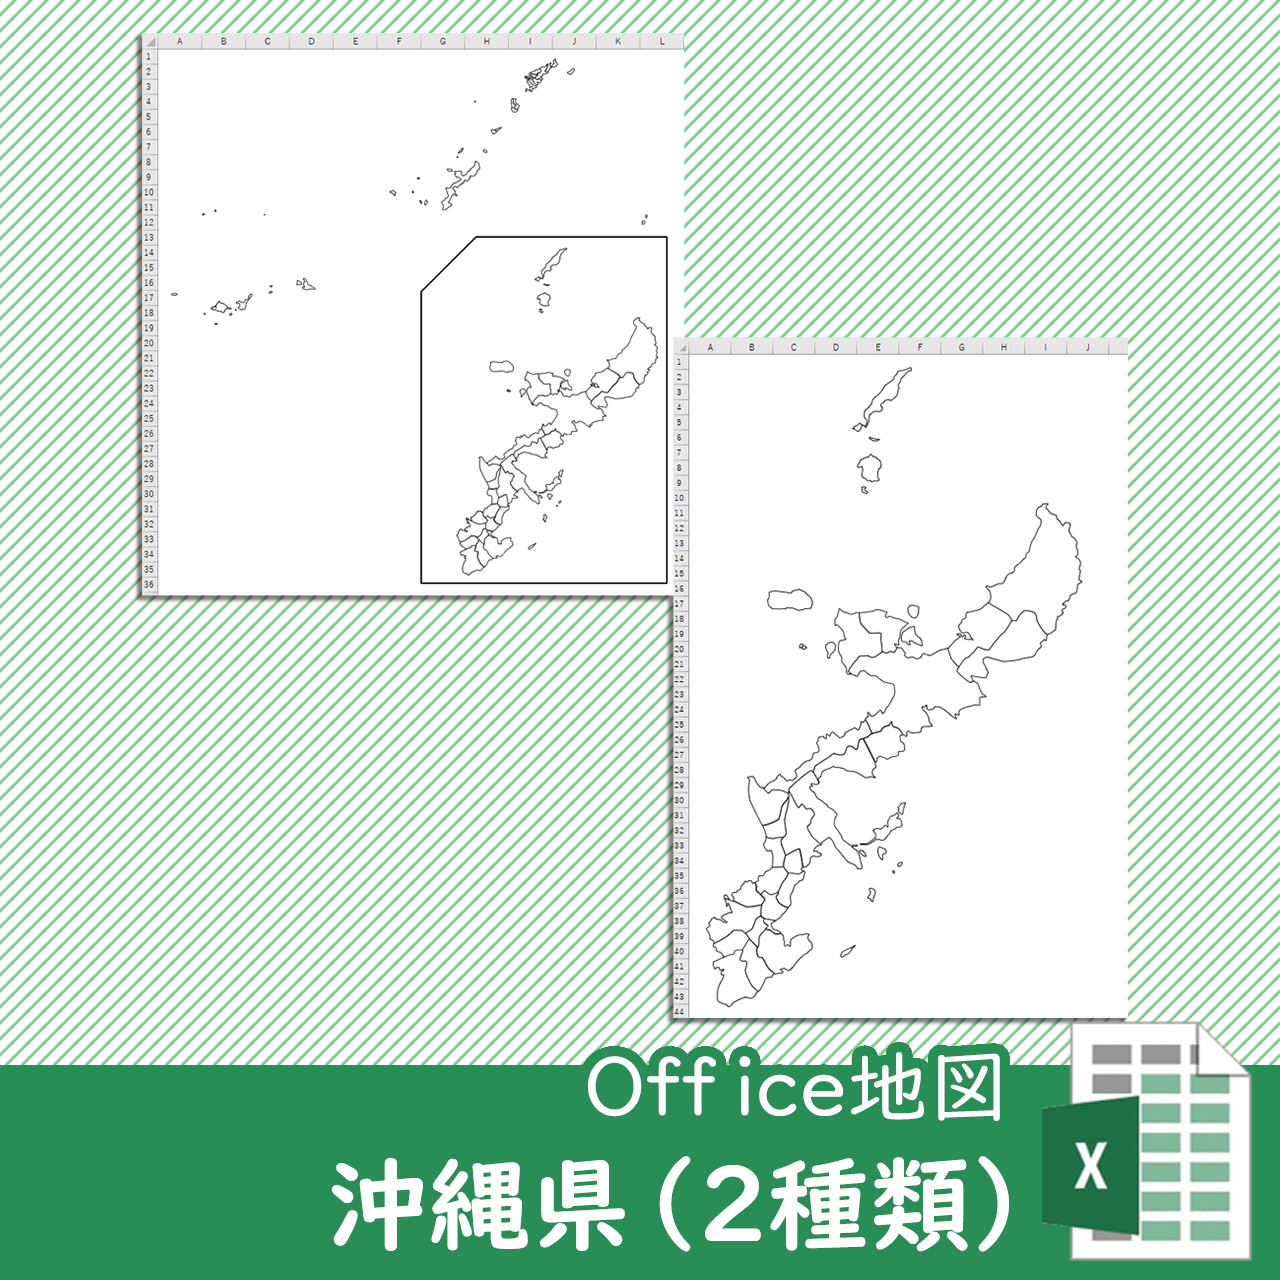 沖縄県のOffice地図のサムネイル